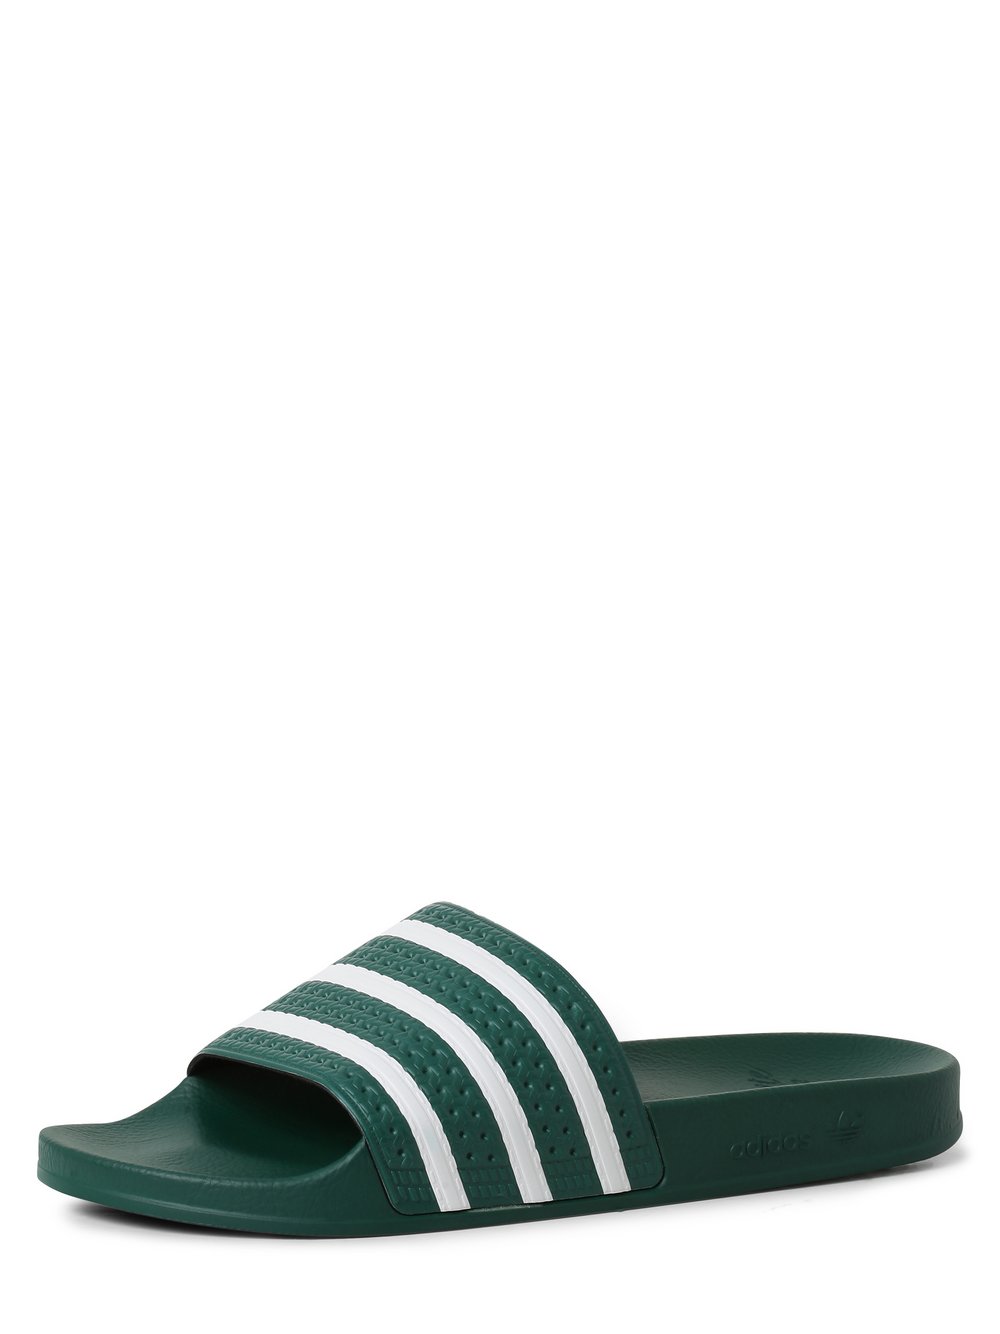 Adidas Originals - Męskie pantofle kąpielowe, zielony